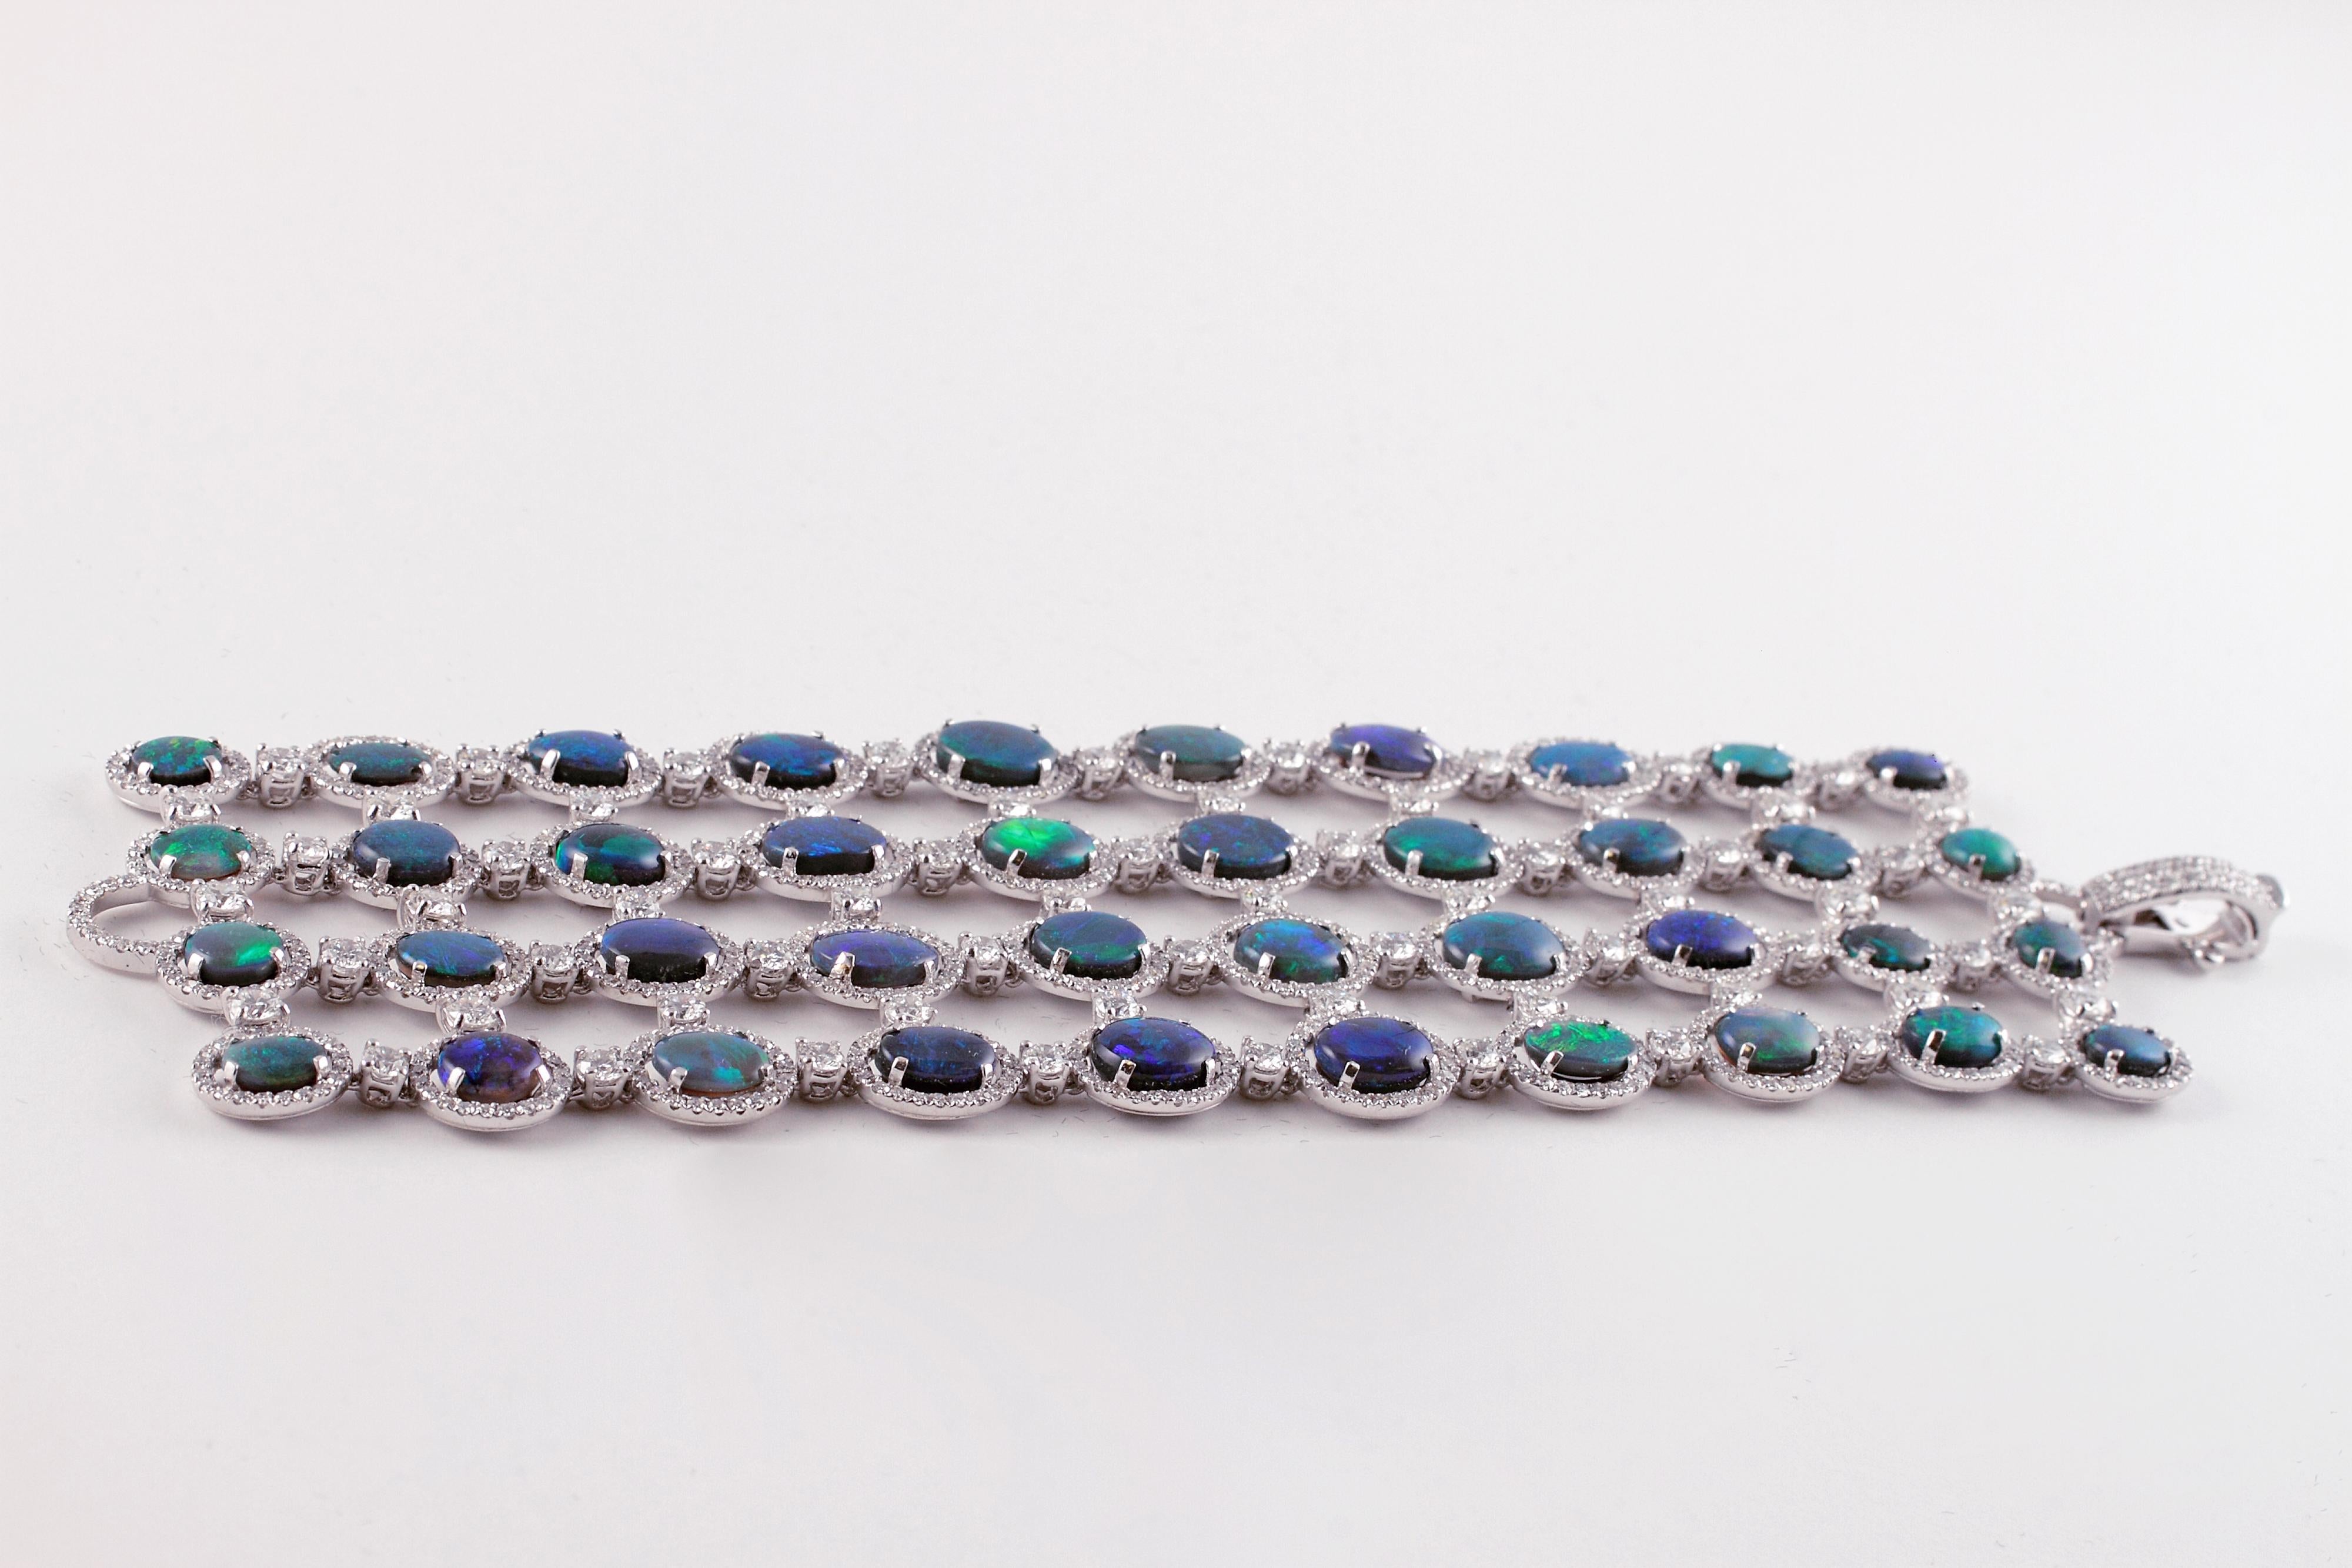 Le jeu de couleurs exquis de ces magnifiques opales est une chose magnifique à contempler !  Ce bracelet a été fabriqué à la main à Londres par le célèbre créateur de bijoux David Morris.  Il présente 4 rangées d'opales de tailles et de couleurs